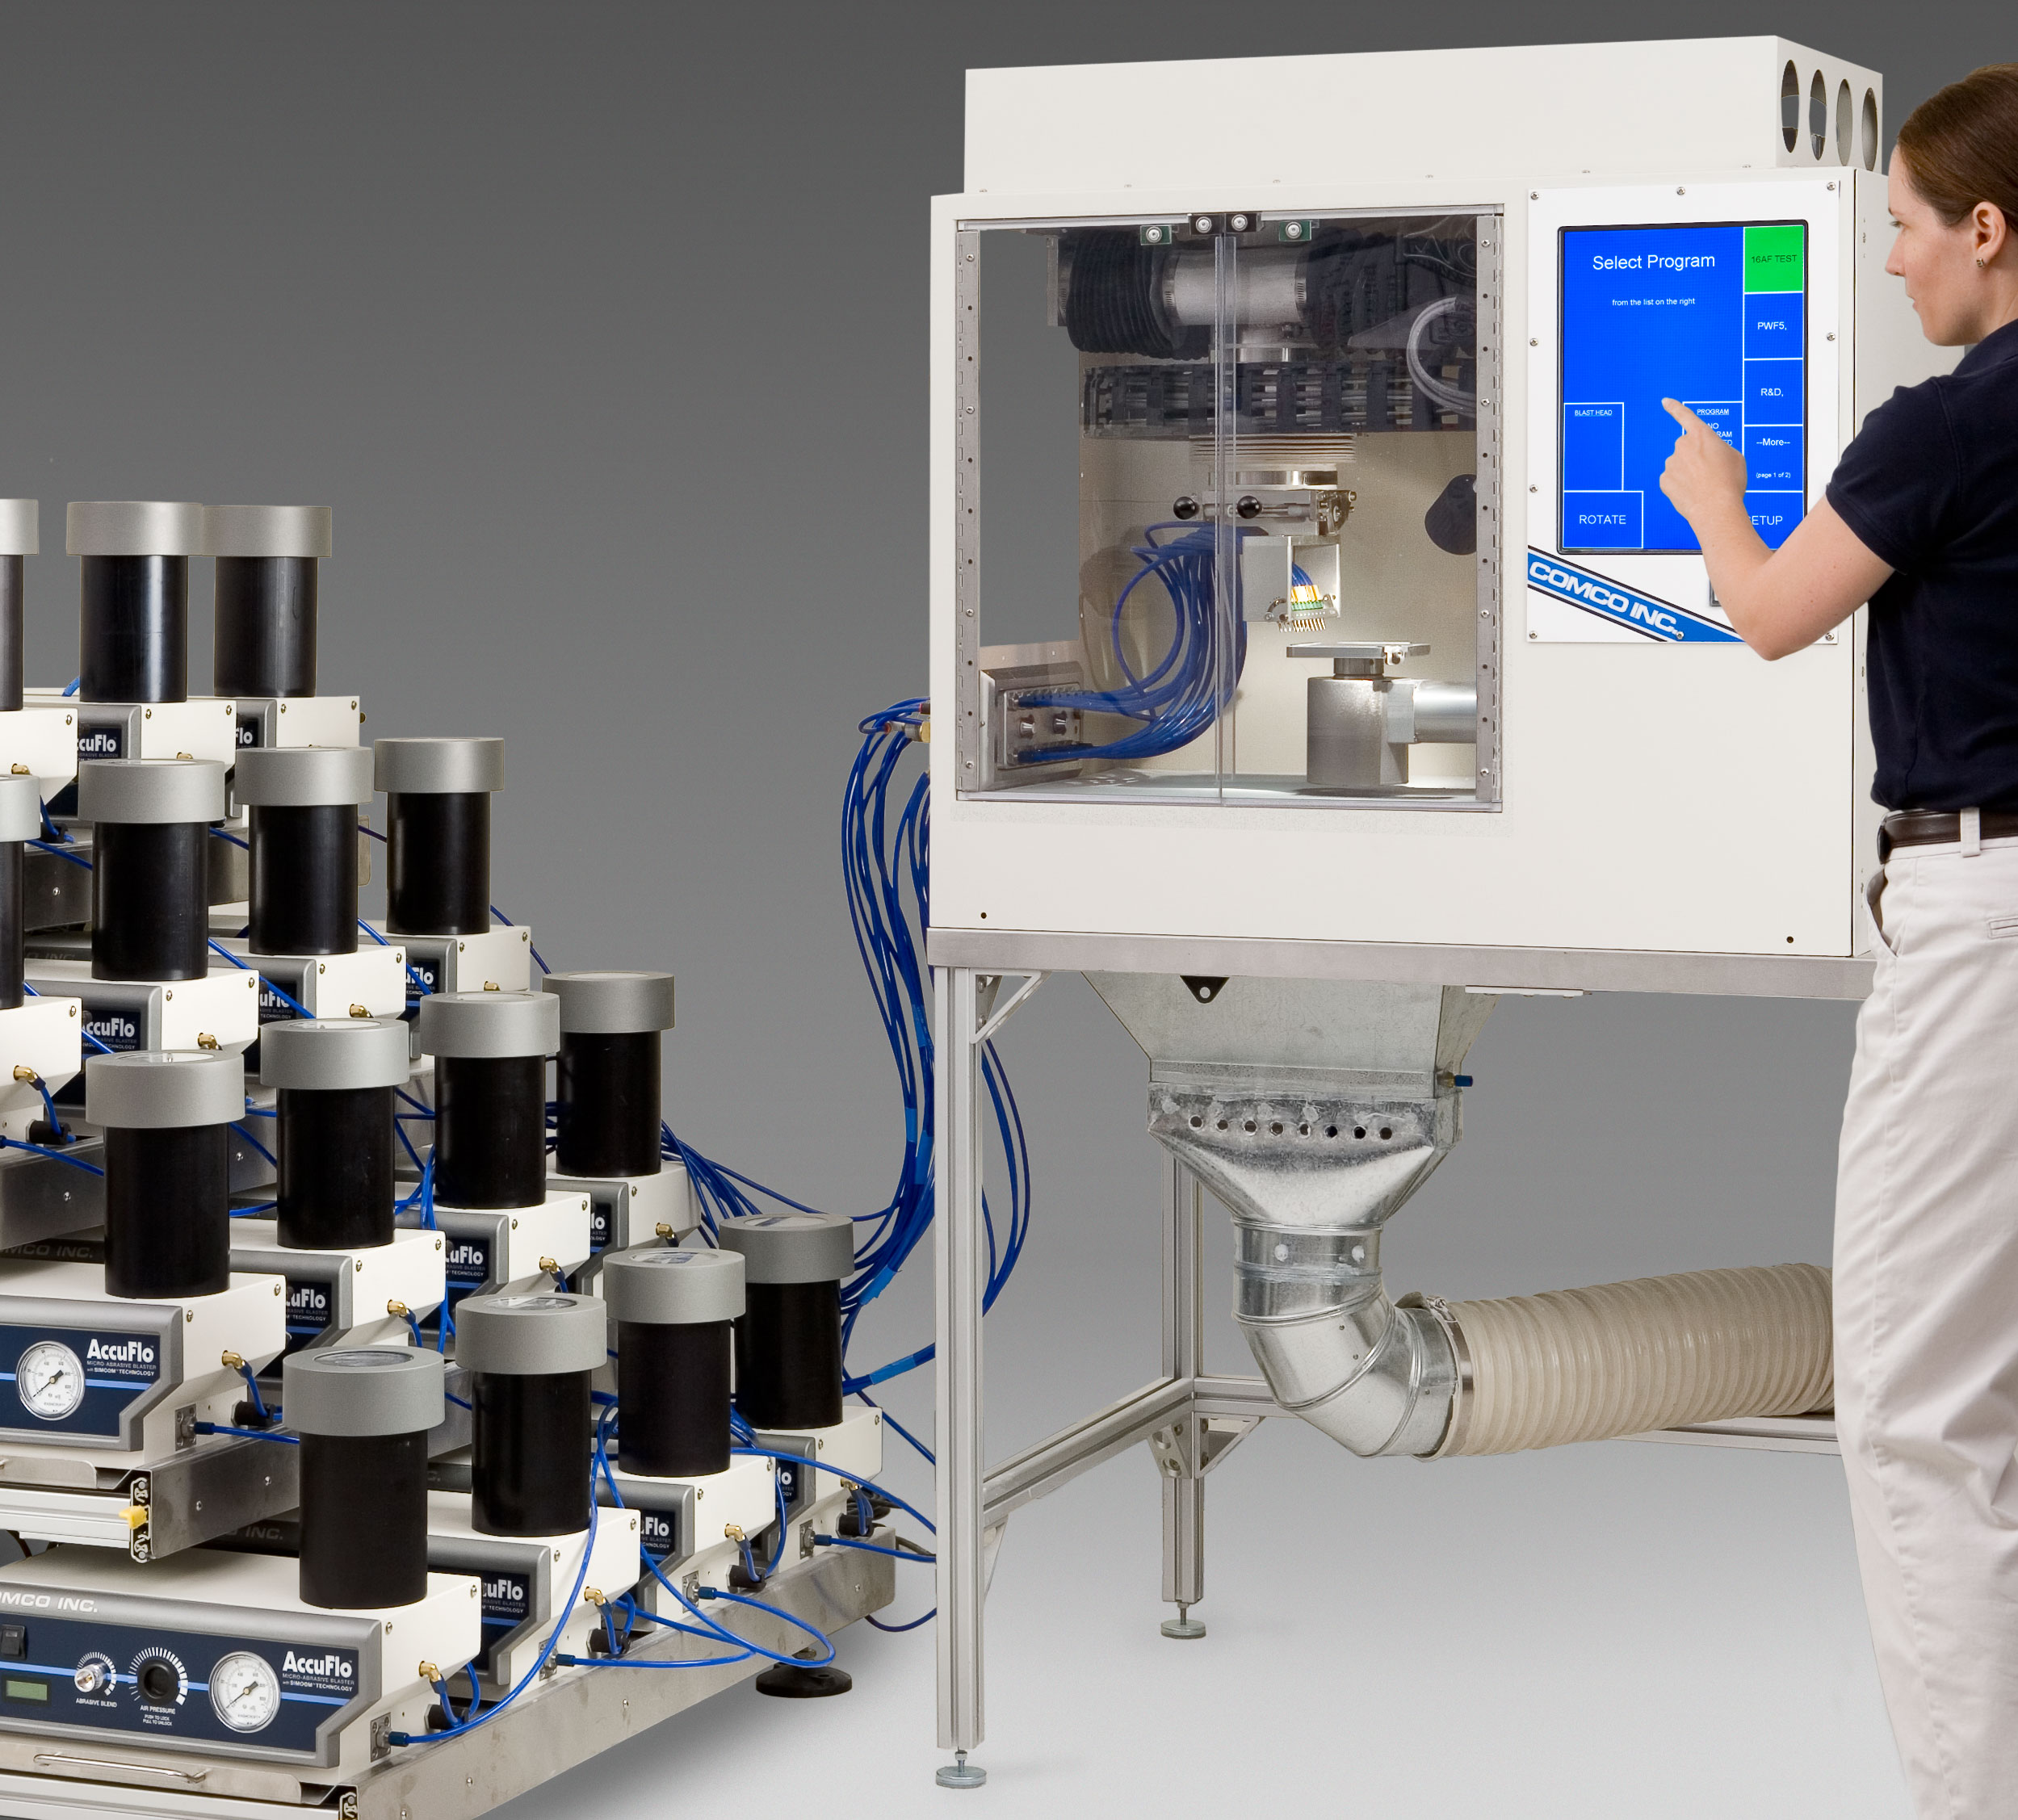 LA3250 Comco Automated MicroBlasting System with multiple AccuFlo micro-precision sandblasters